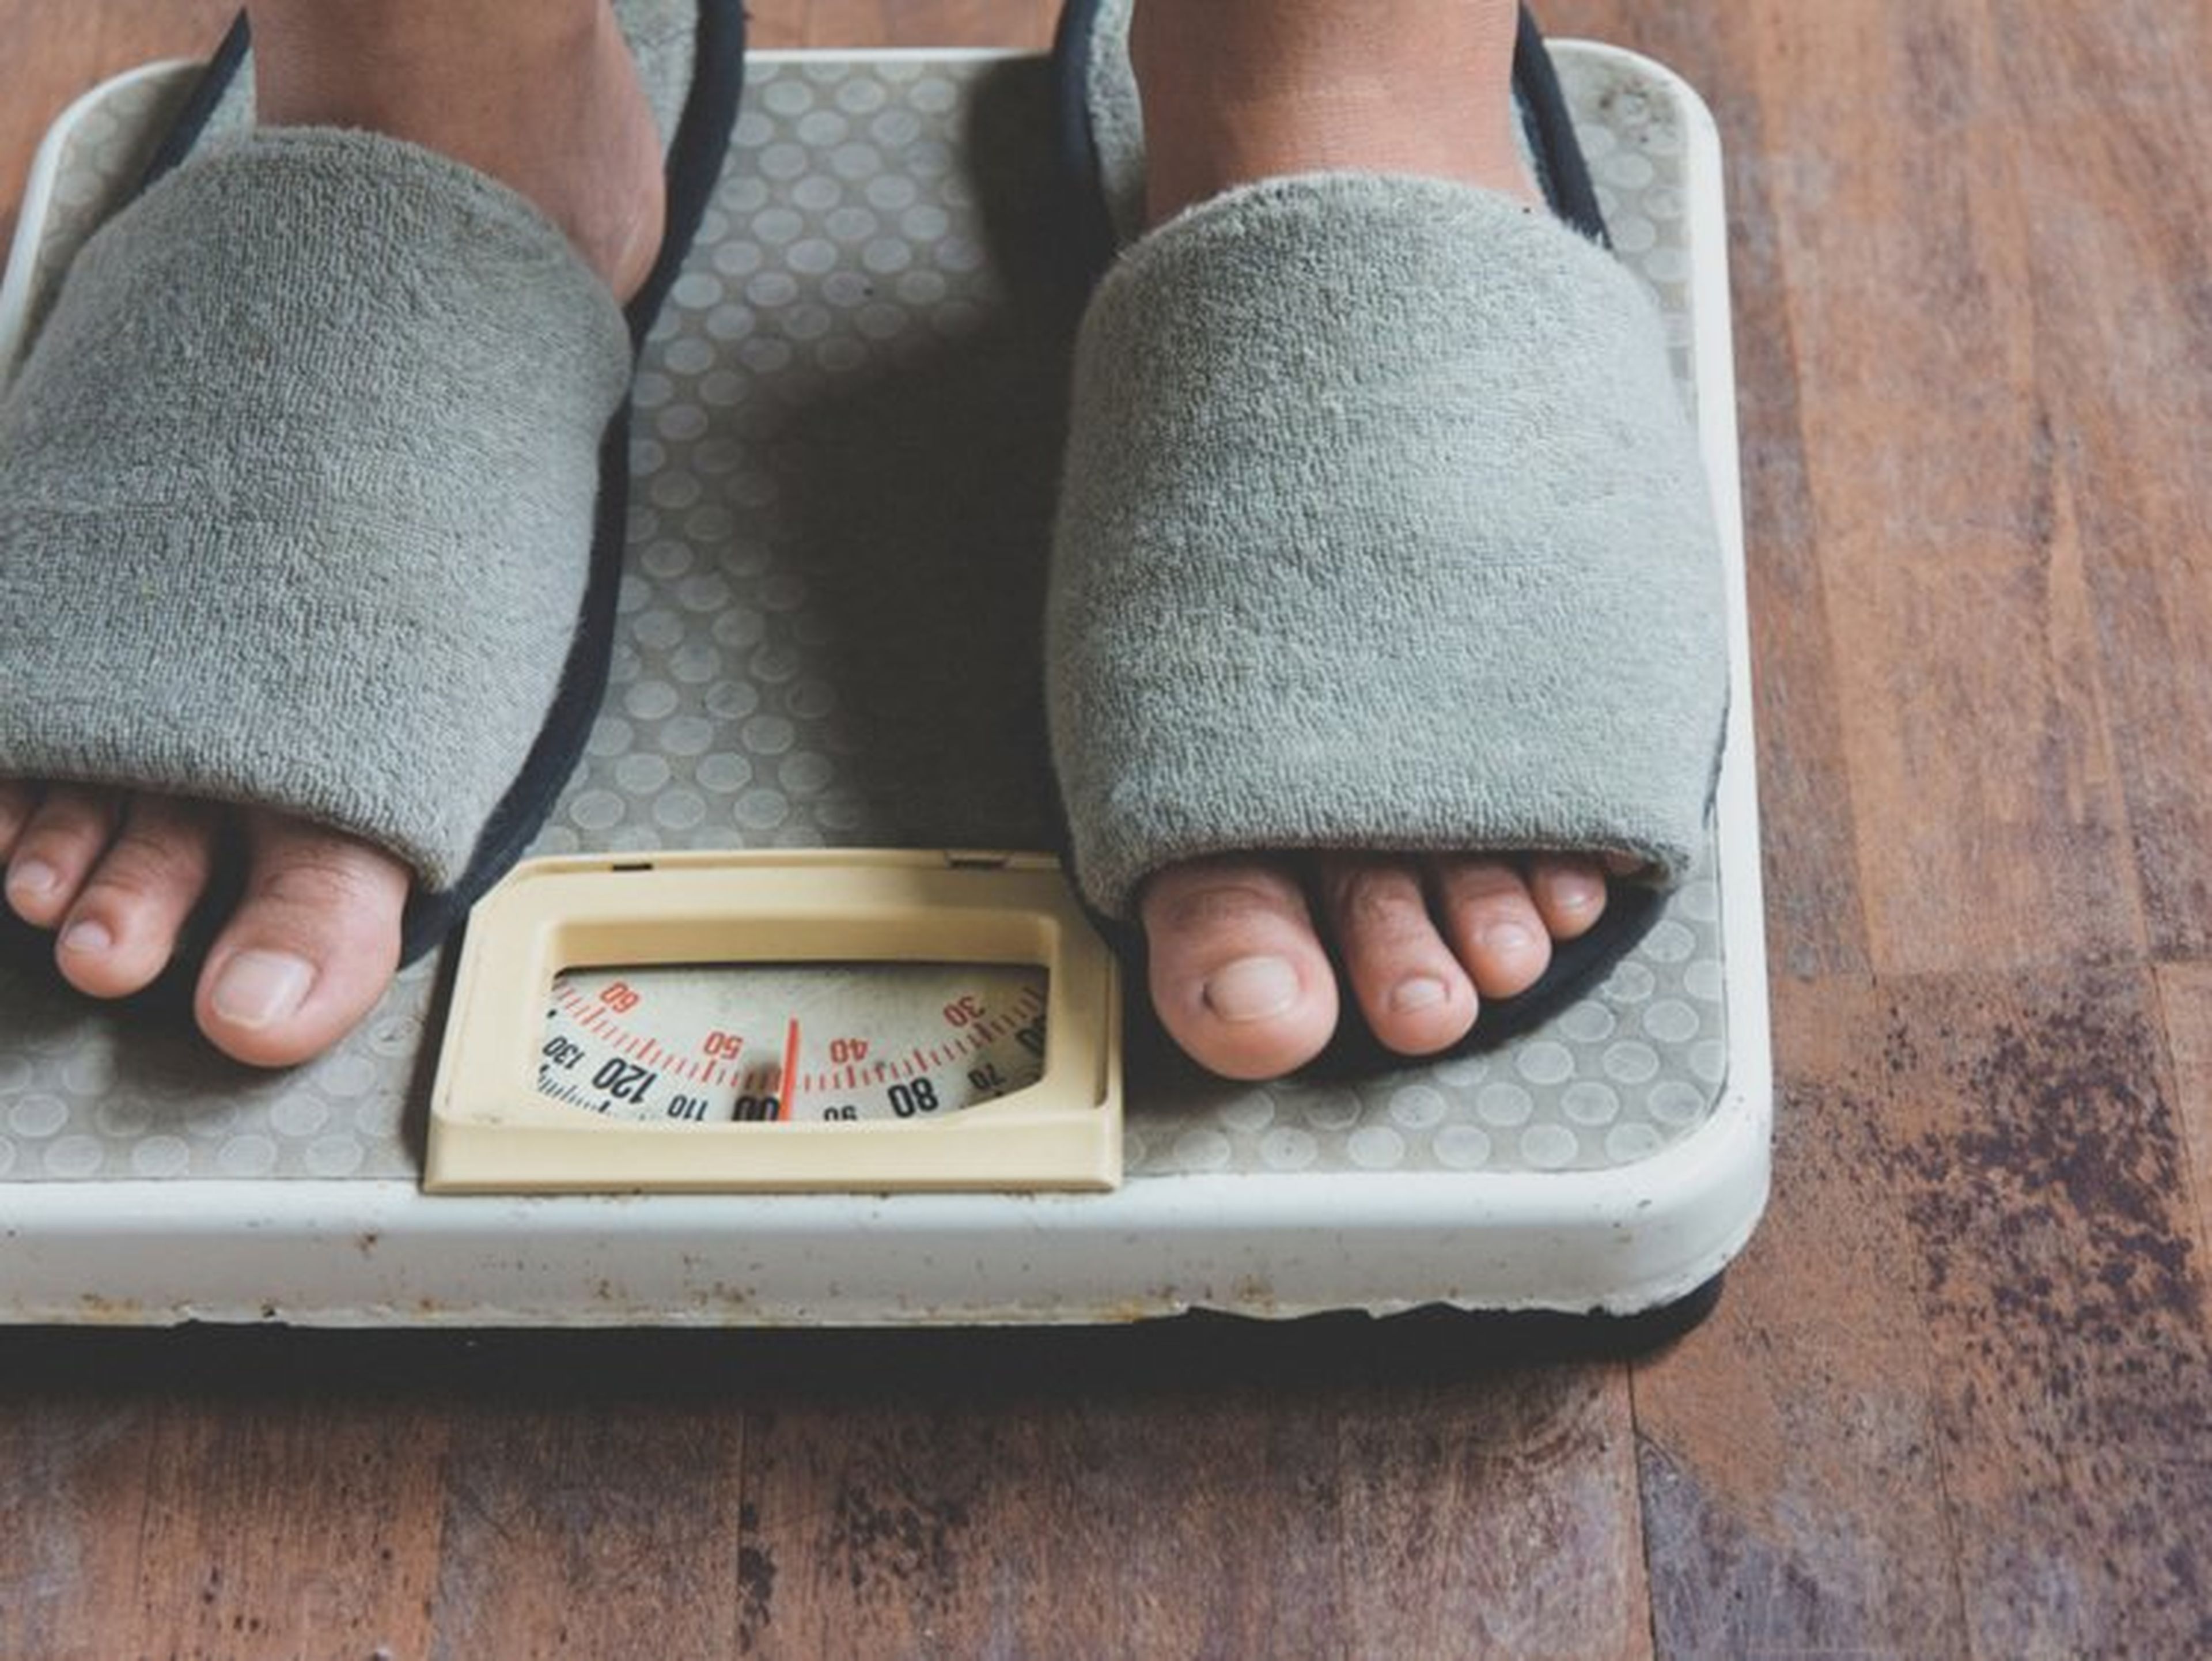 La metformina ayudó al 28,5% de los participantes del estudio a perder al menos un 5% de peso corporal y mantener un 2% de dicha pérdida durante largos períodos de tiempo.